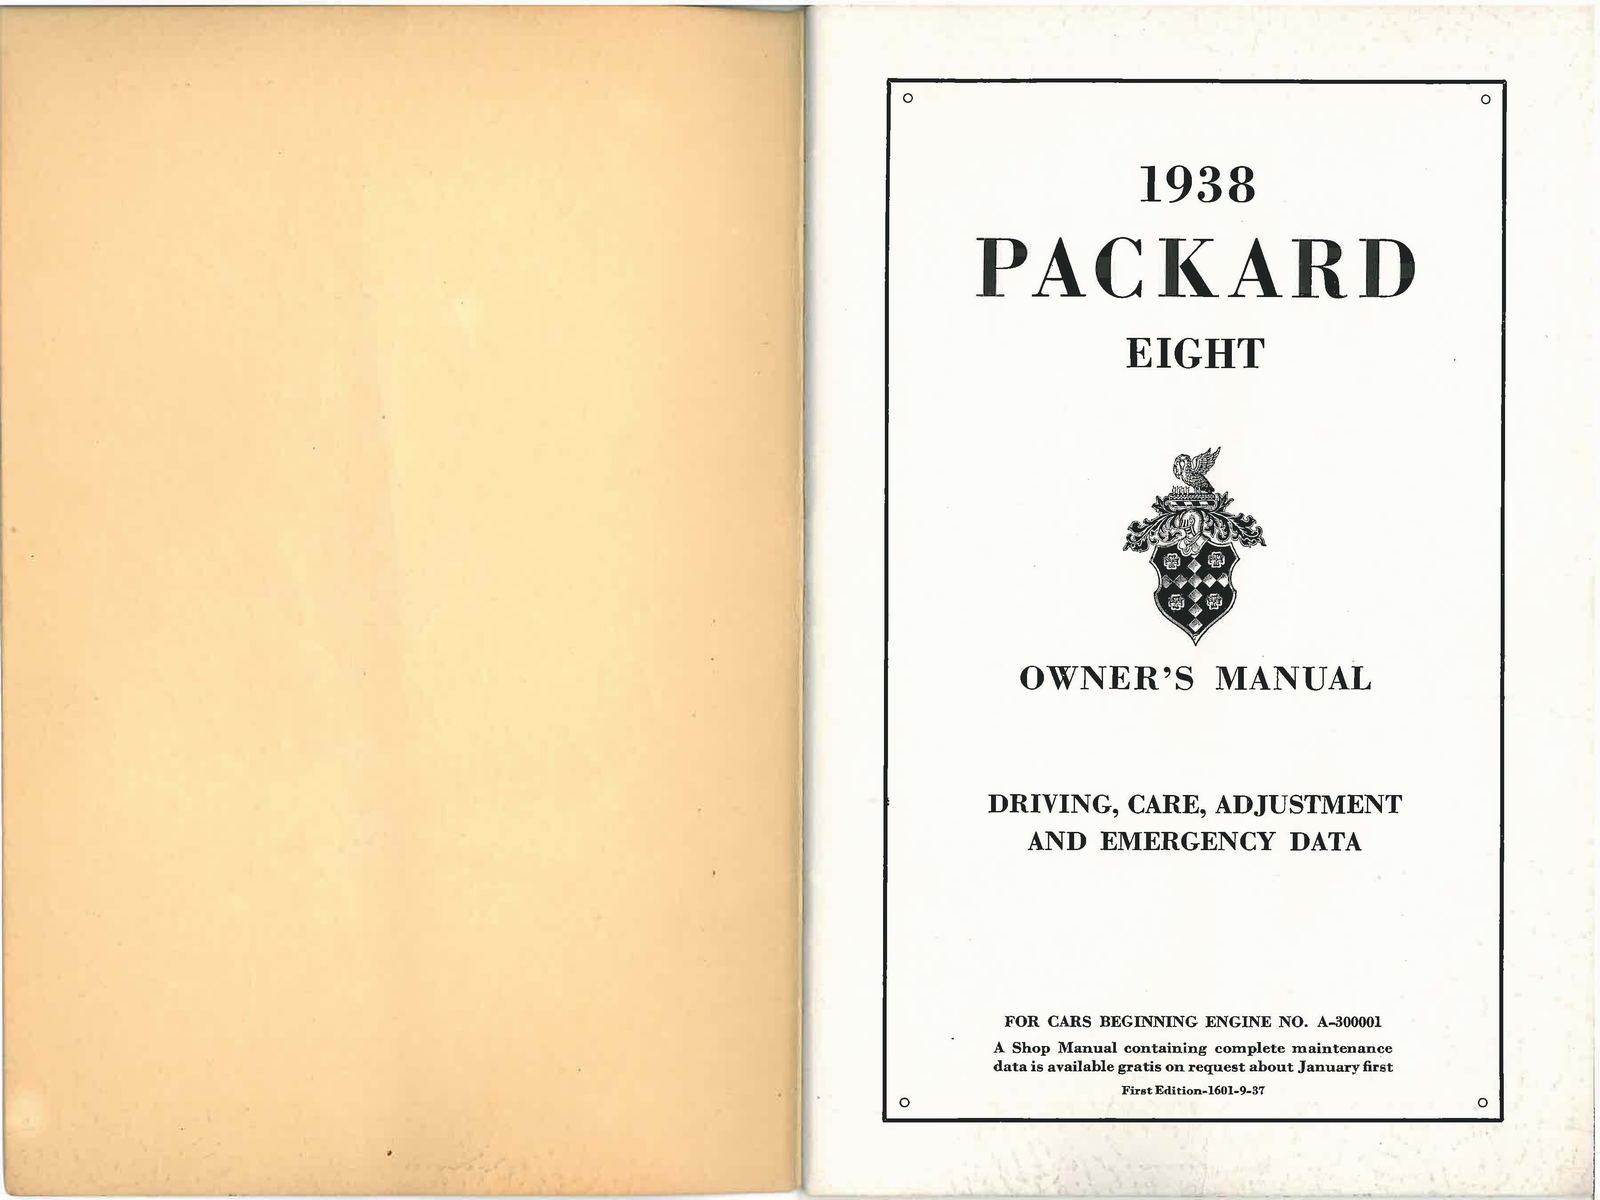 n_1938 Packard Eight Manual-00a-01.jpg